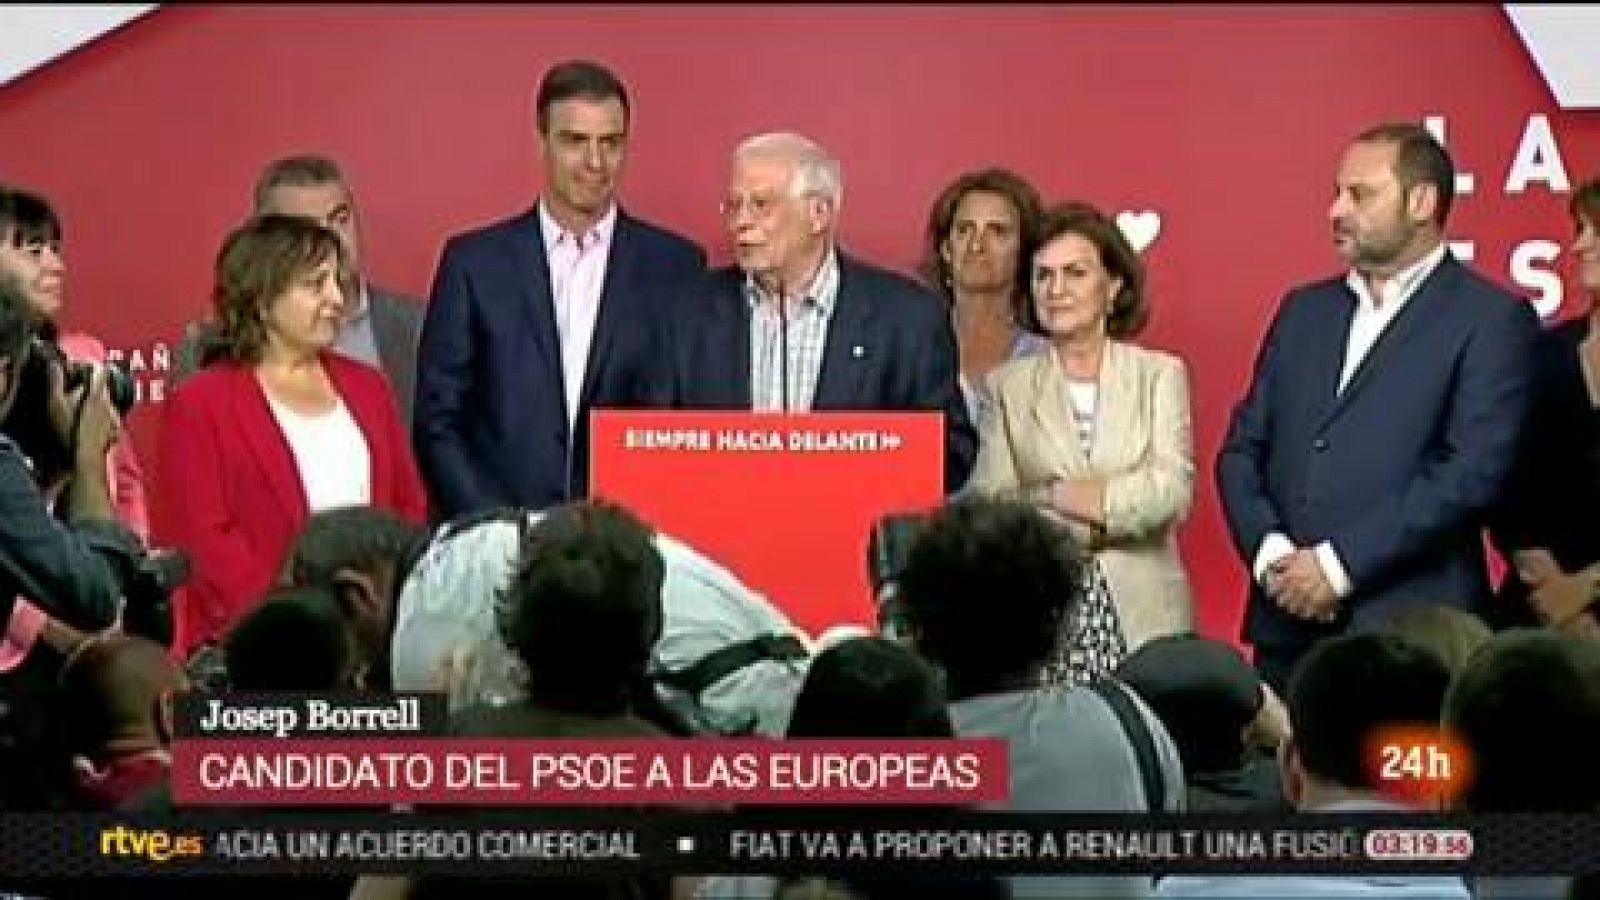 Elecciones europeas | Borrell celebra la victorial del PSOE en las europeas - RTVE.es